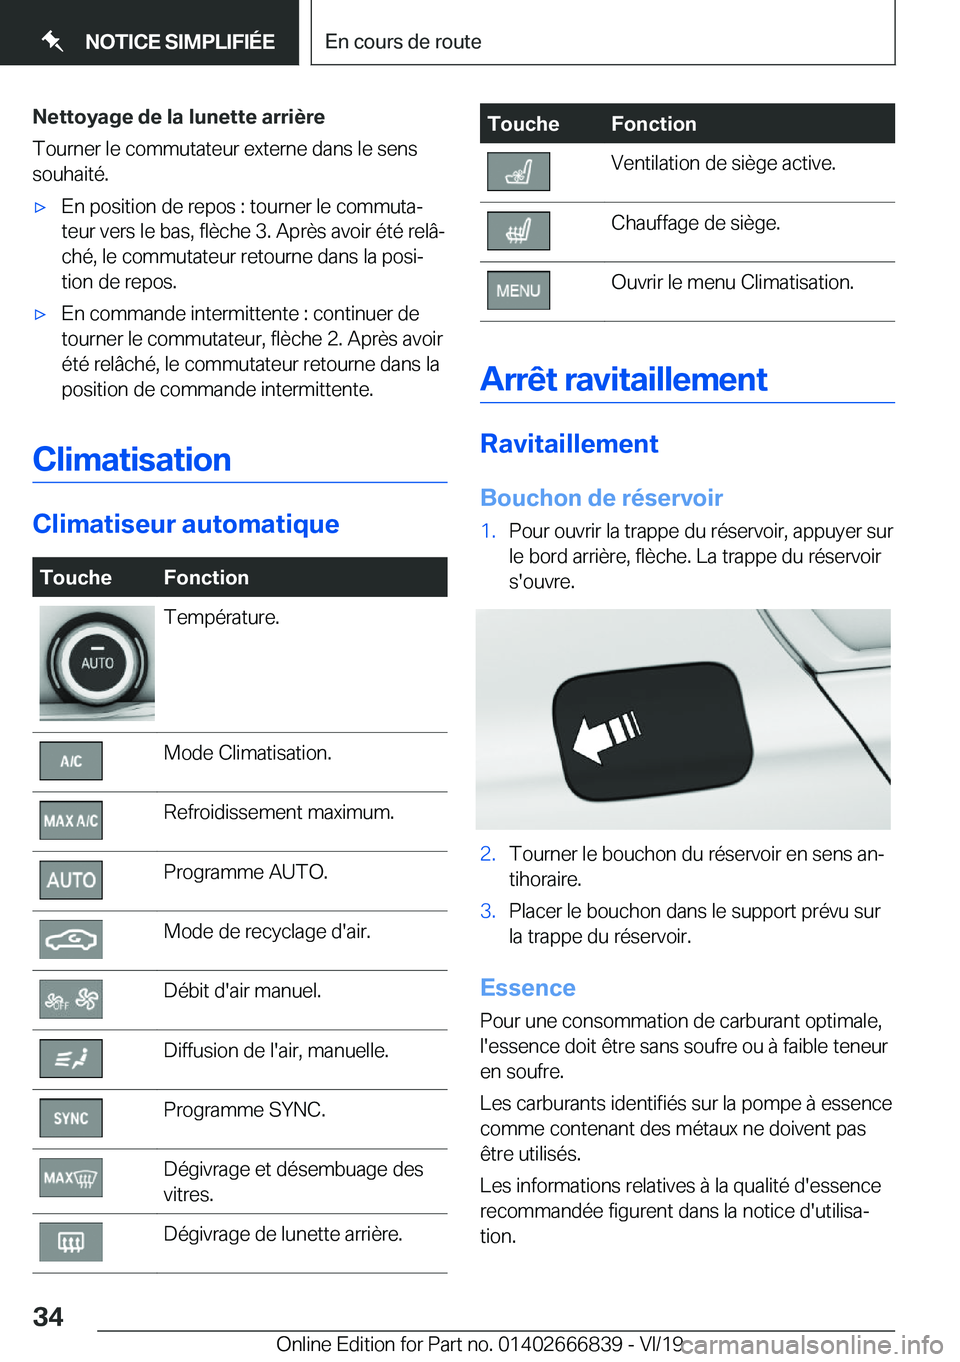 BMW X3 M 2020  Notices Demploi (in French) �N�e�t�t�o�y�a�g�e��d�e��l�a��l�u�n�e�t�t�e��a�r�r�i�è�r�e
�T�o�u�r�n�e�r��l�e��c�o�m�m�u�t�a�t�e�u�r��e�x�t�e�r�n�e��d�a�n�s��l�e��s�e�n�s
�s�o�u�h�a�i�t�é�.'x�E�n��p�o�s�i�t�i�o�n�